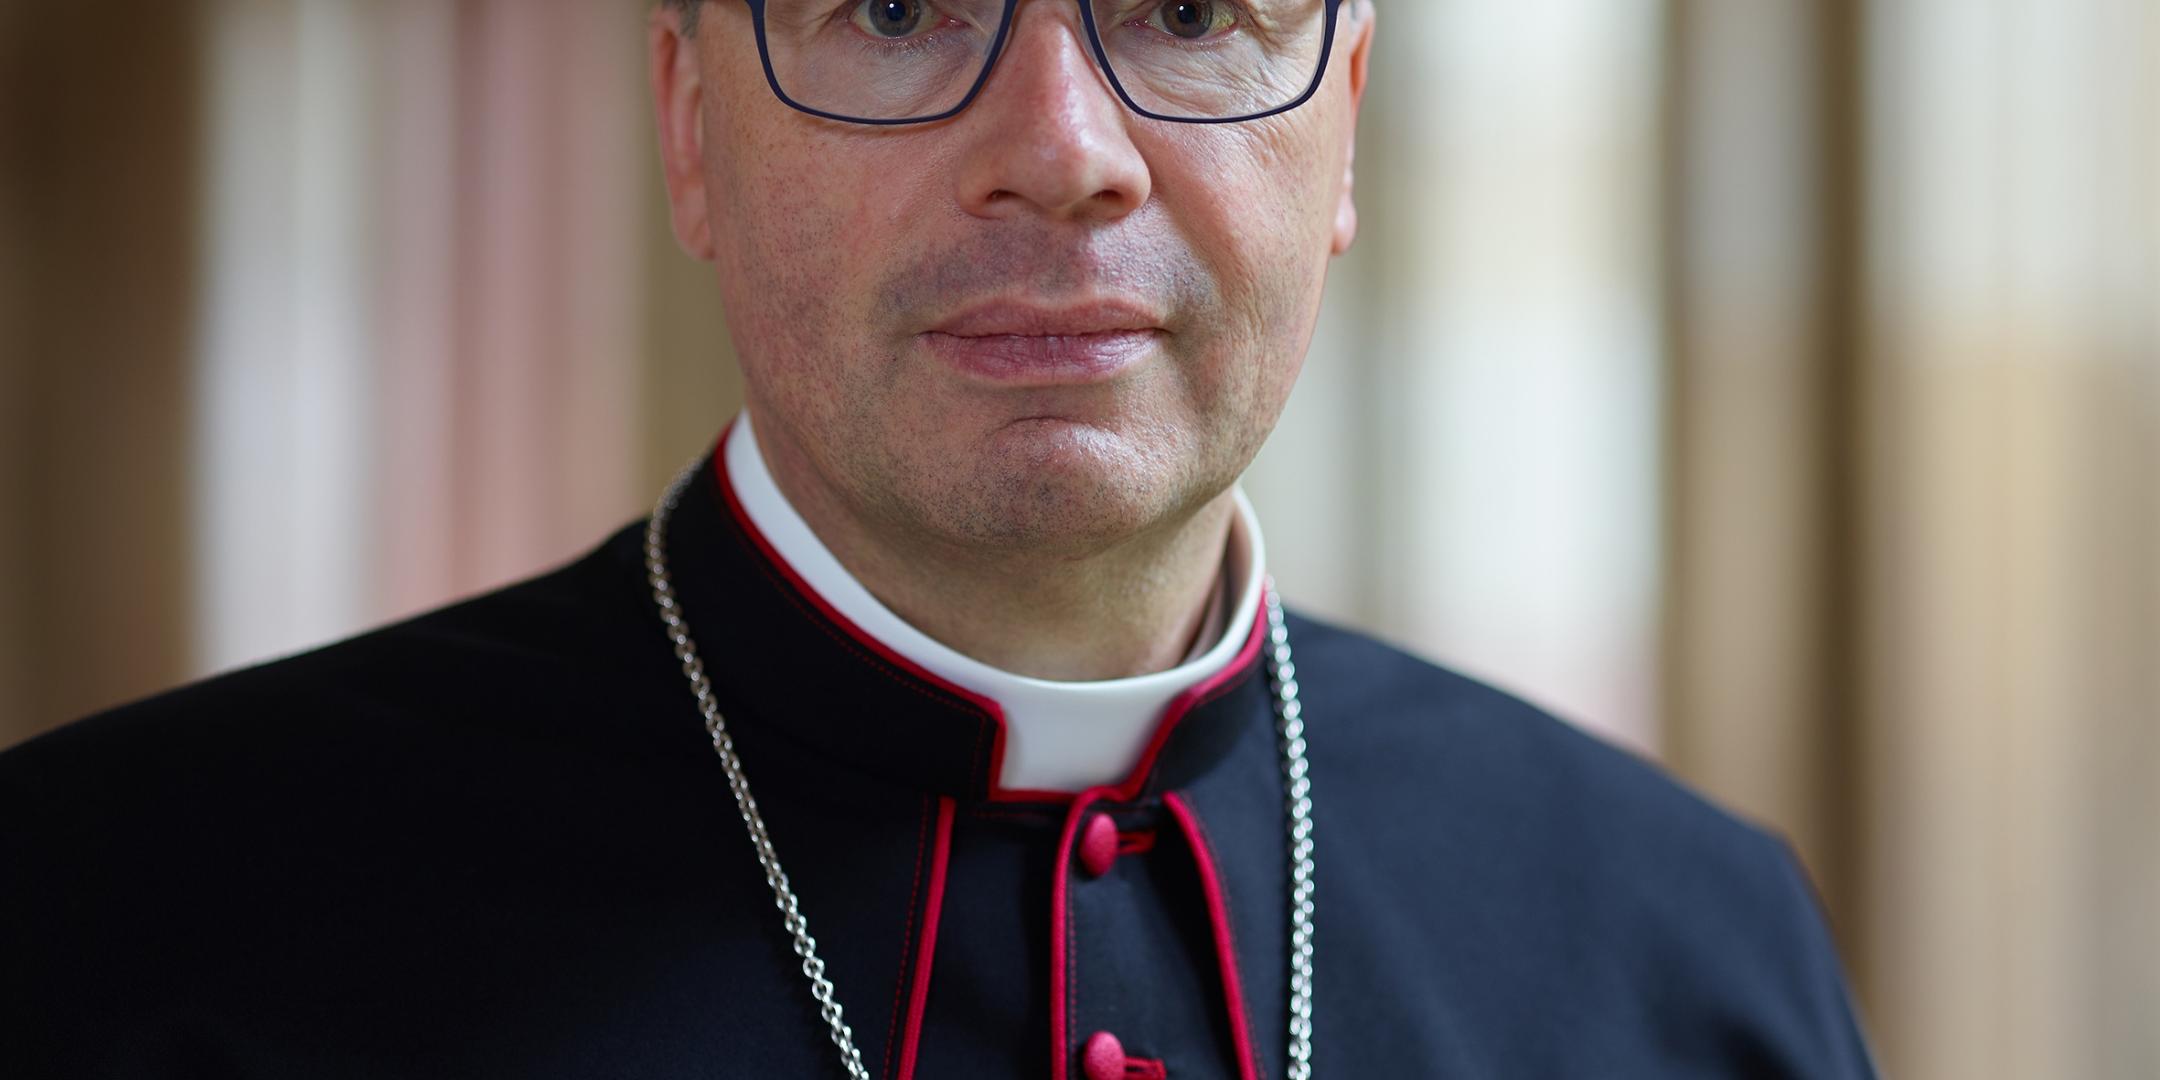 Bischof Dr. Stephan Ackermann ist Vorsitzender der Liturgiekommission der Deutschen Bischofskonferenz